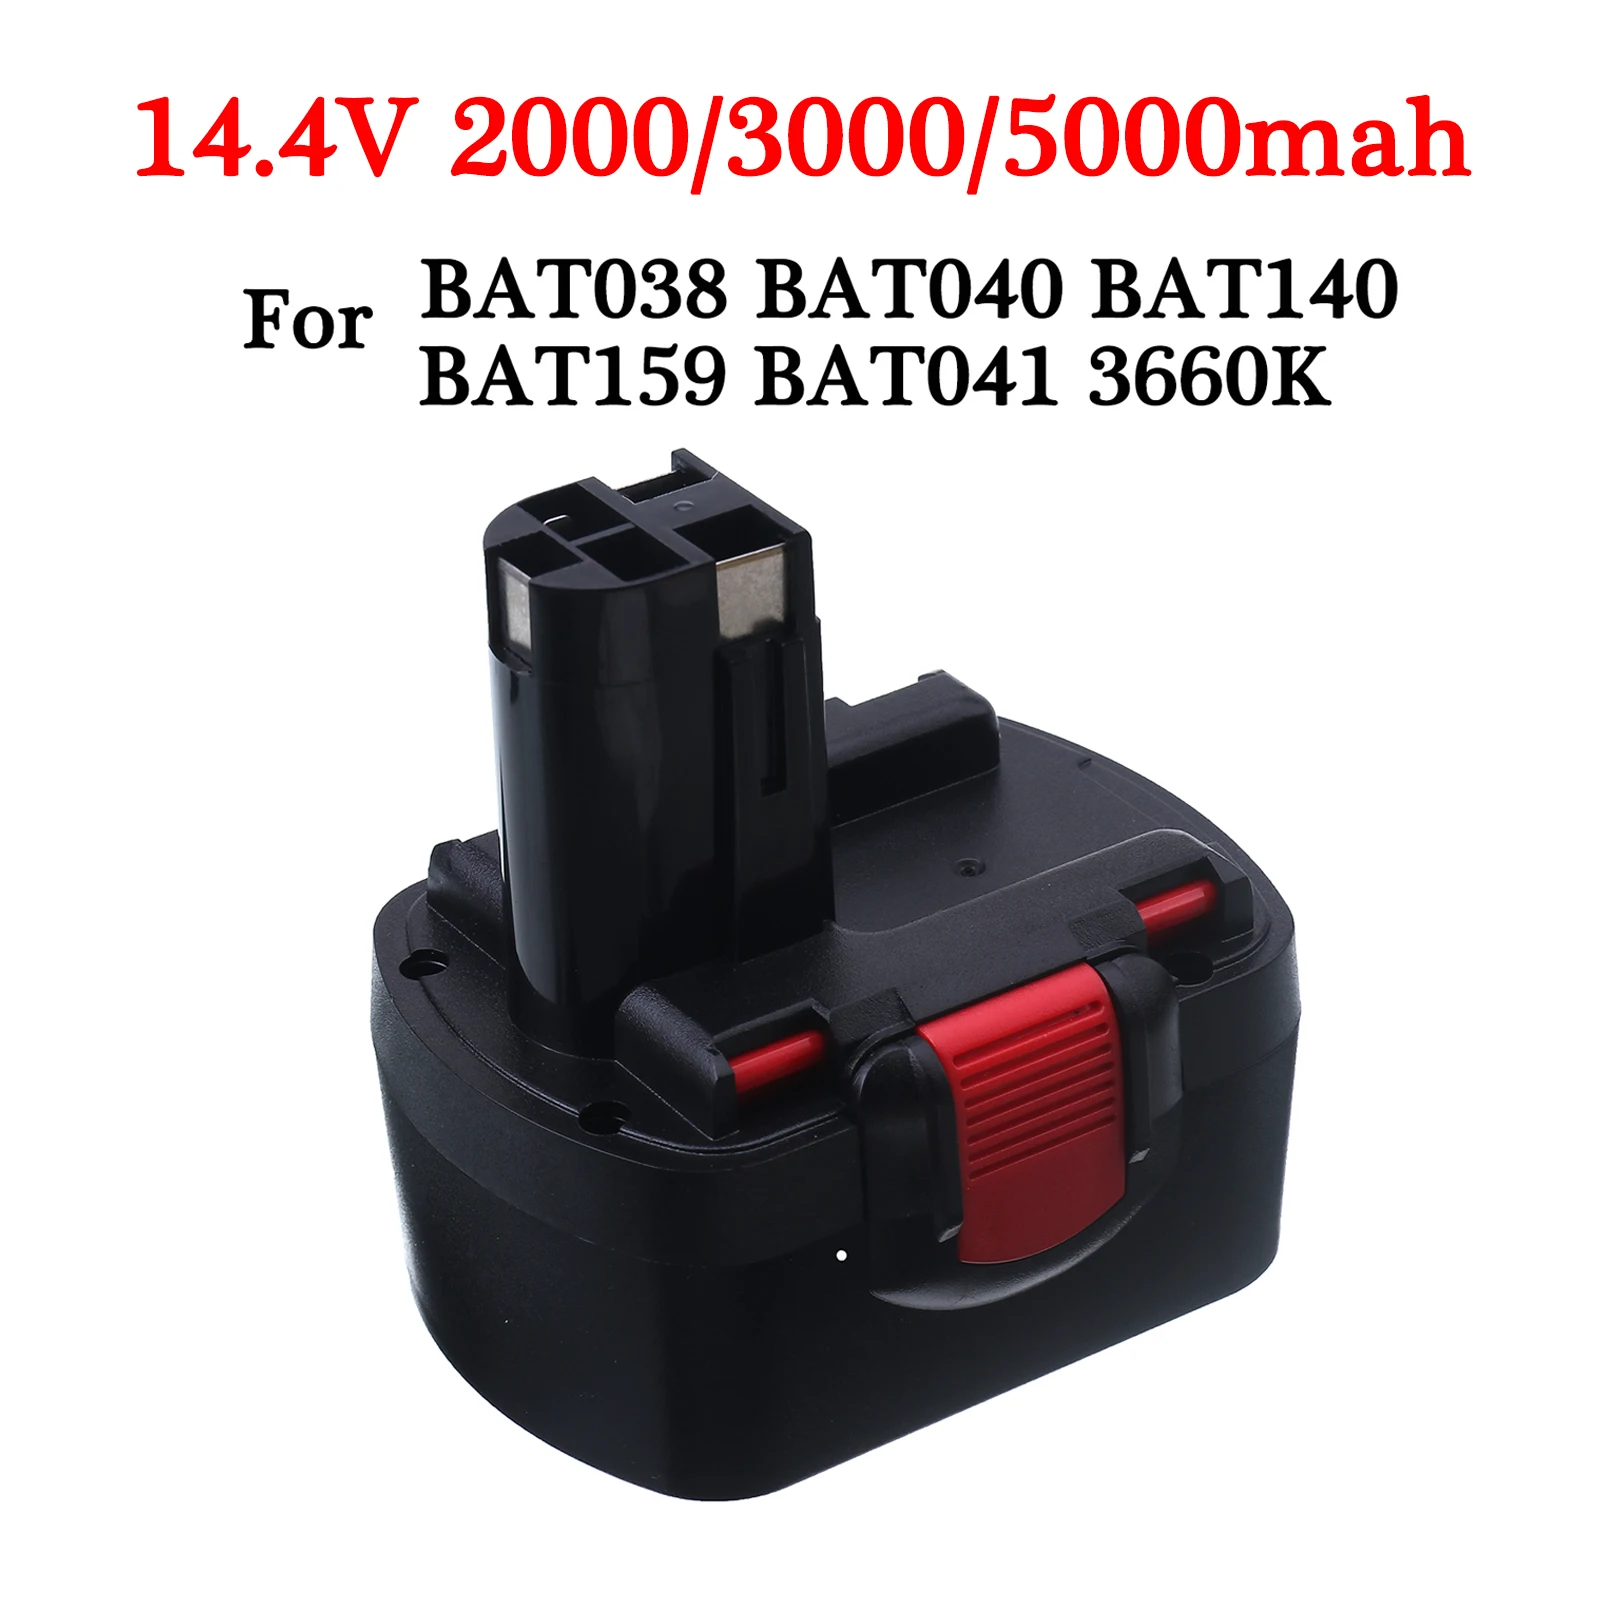 

14.4V 2.0/3.0Ah 5.0Ah Ni-CD Rechargeable Battery For bosch Drill Screwdriver BAT038 BAT040 BAT140 BAT159 BAT041 3660K 2607335533